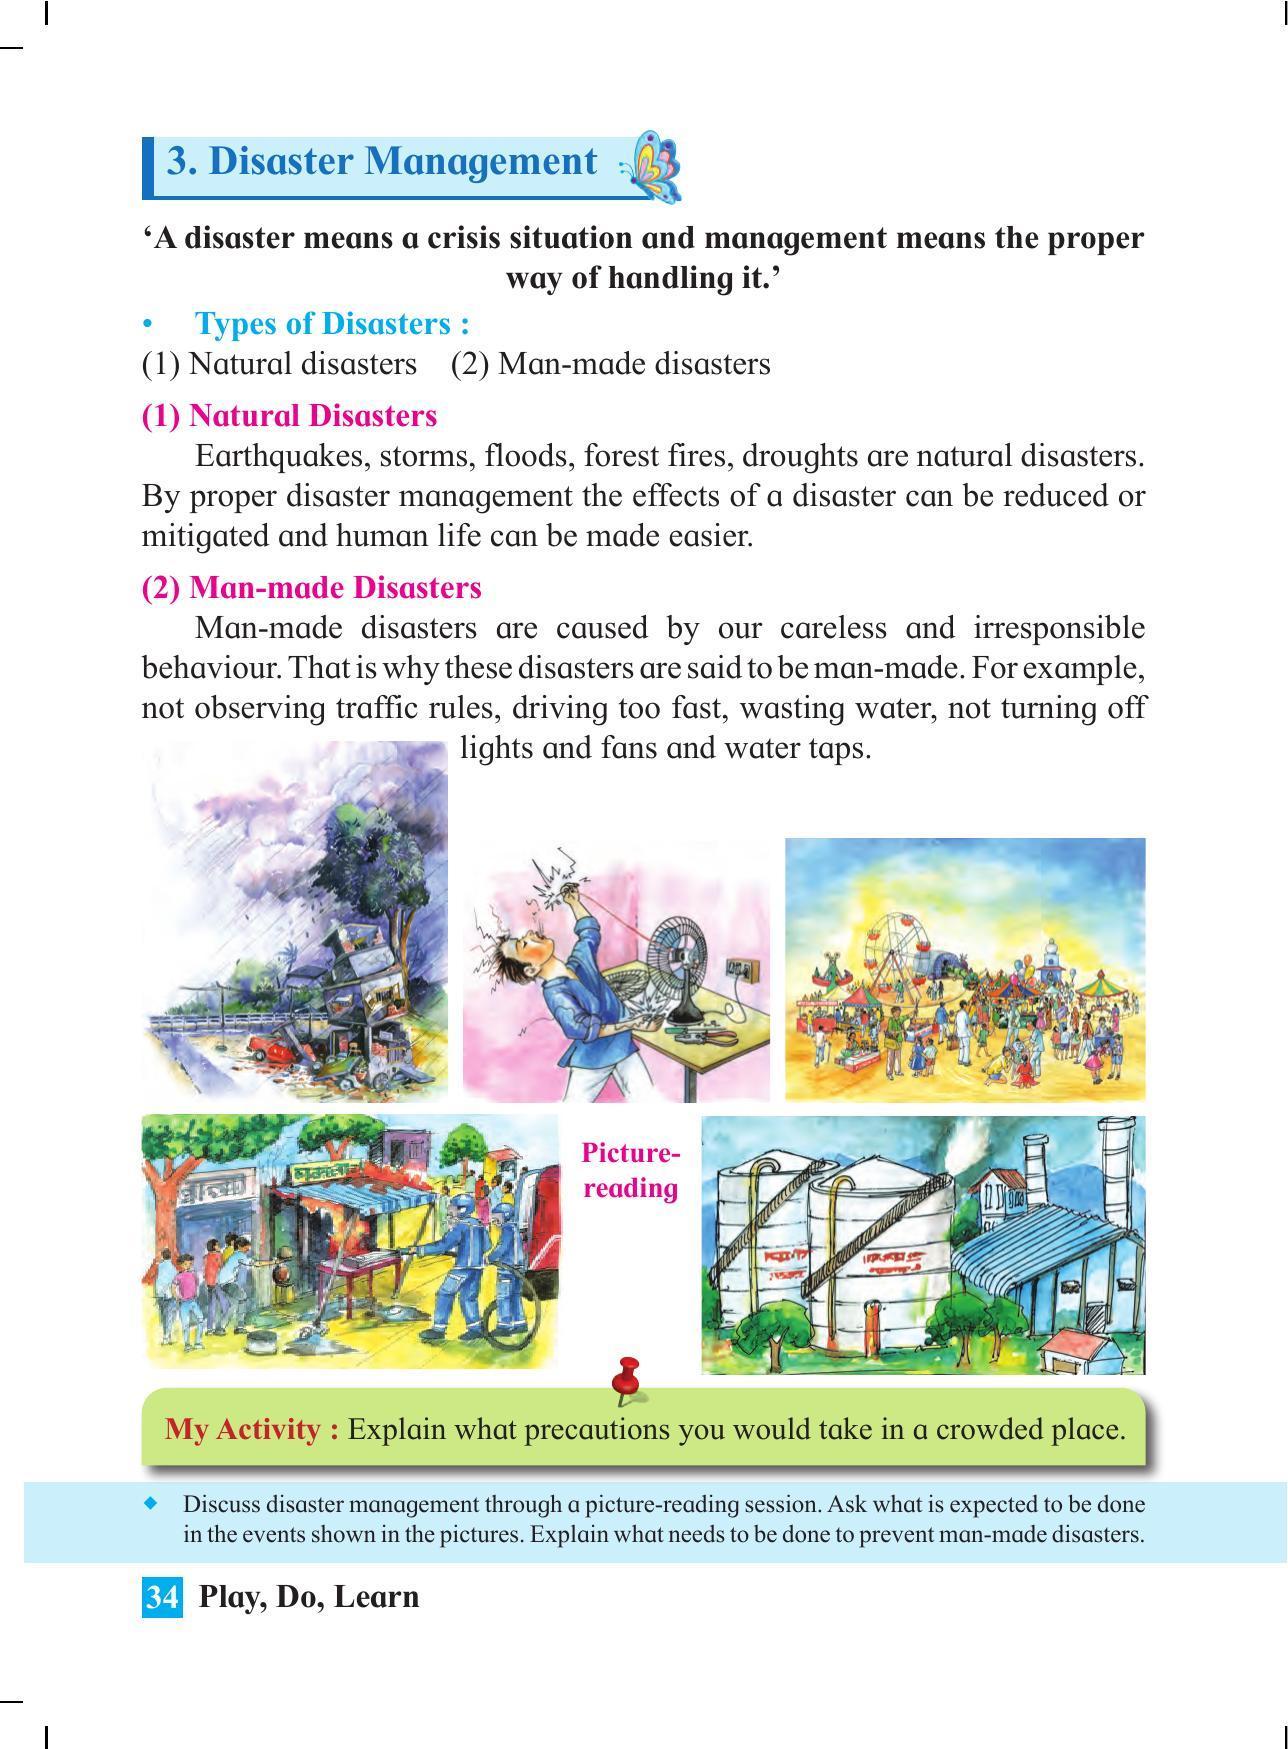 Maharashtra Board Class 4 Play Do Learn (English Medium) Textbook - Page 43